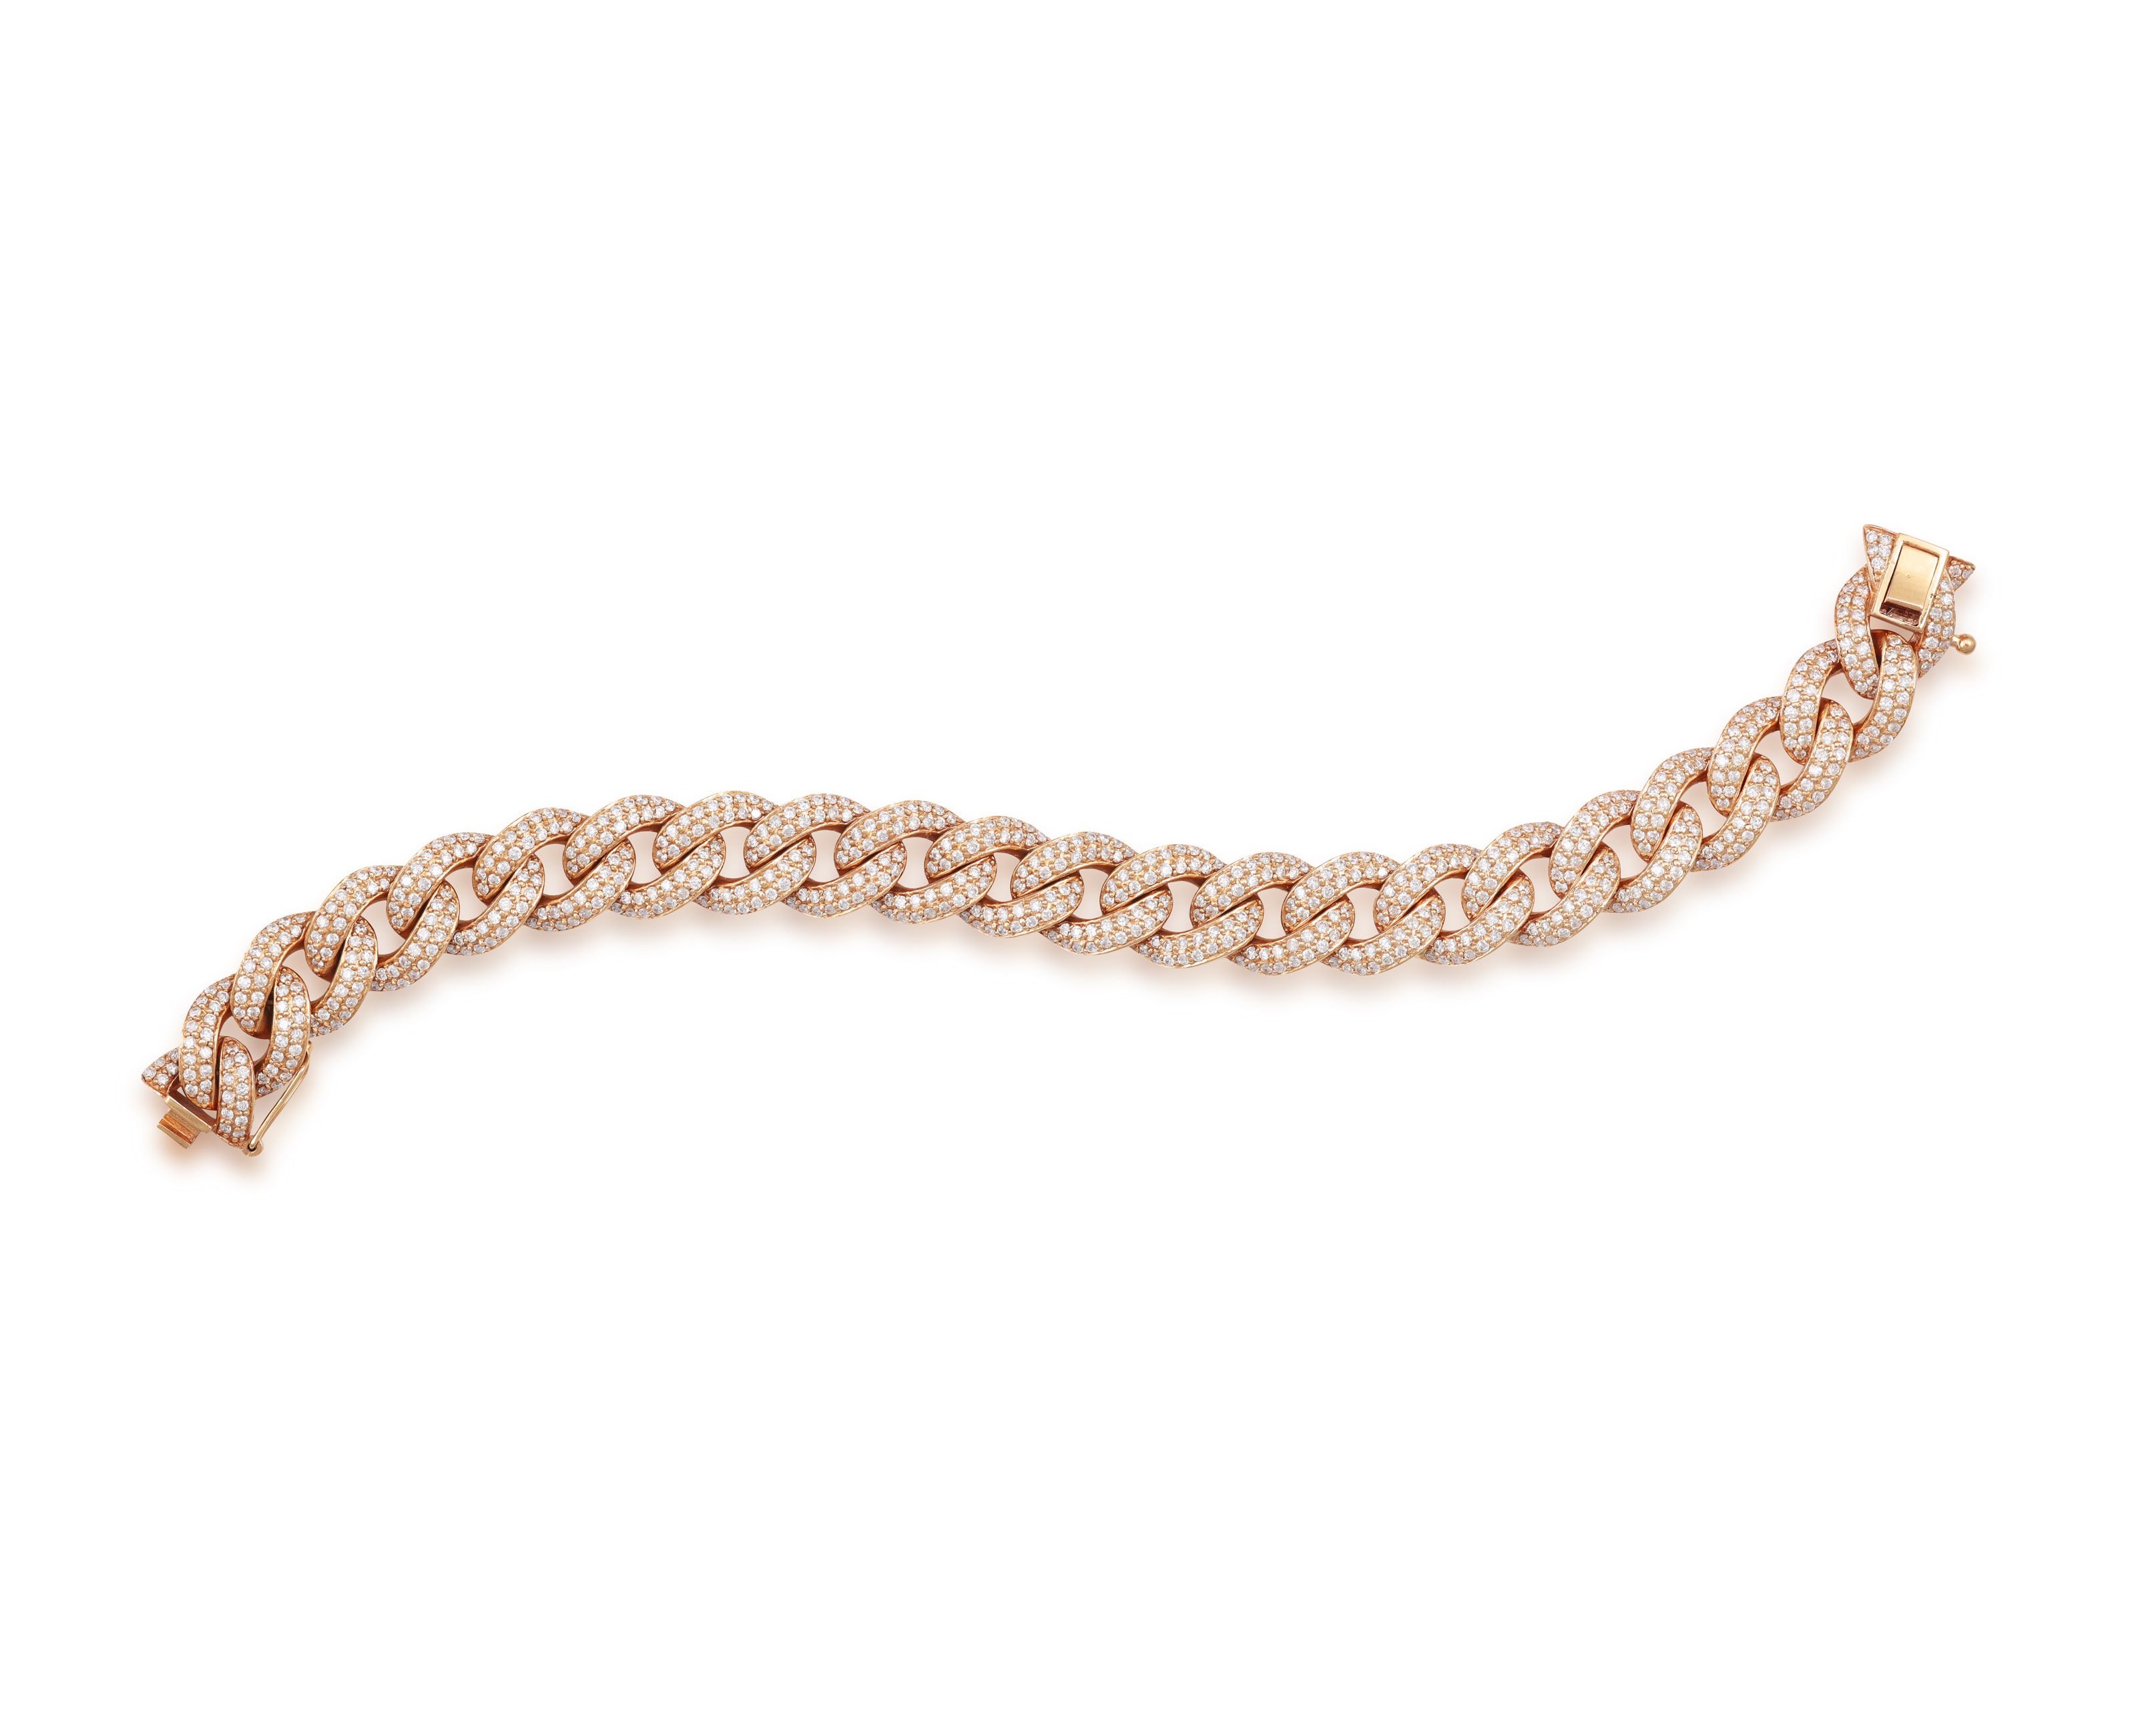 A DIAMOND GOURMETTE BRACELET The curb-link chain bracelet pavé-set with brilliant-cut diamonds - Image 2 of 7